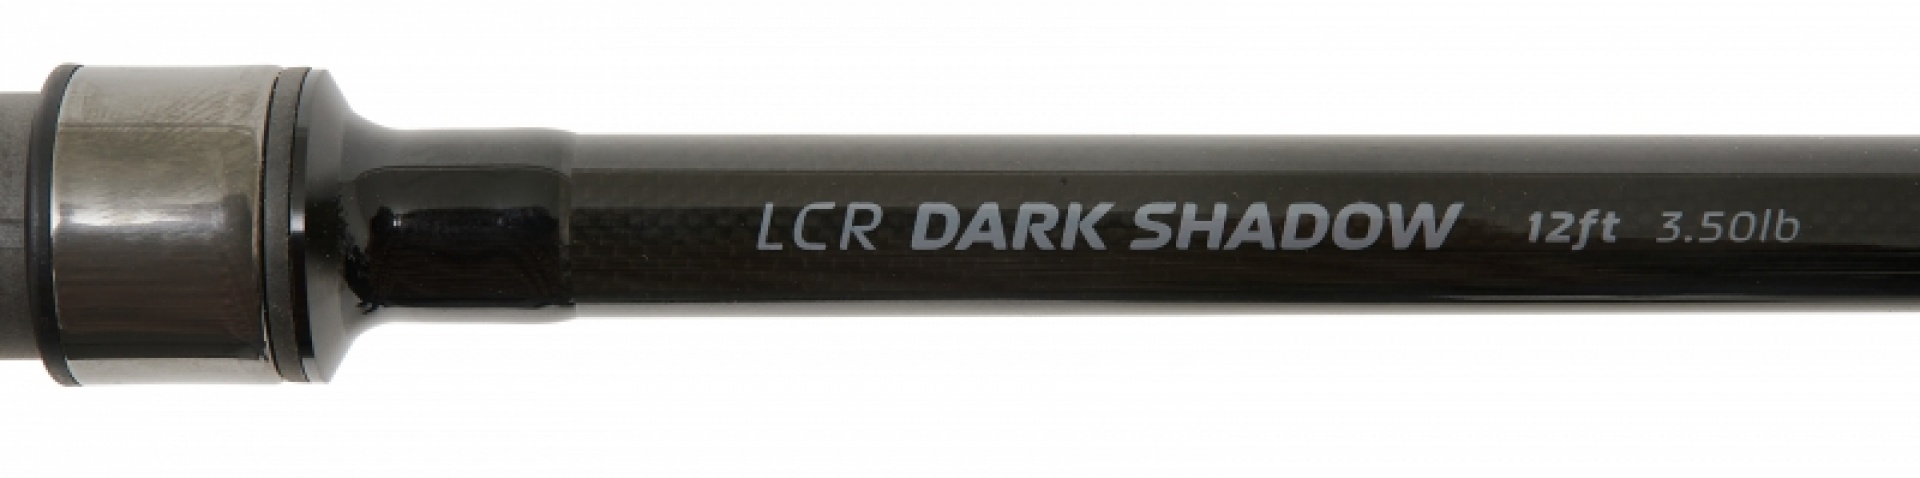 Starbaits Milspec LCR Dark Shadow Rod